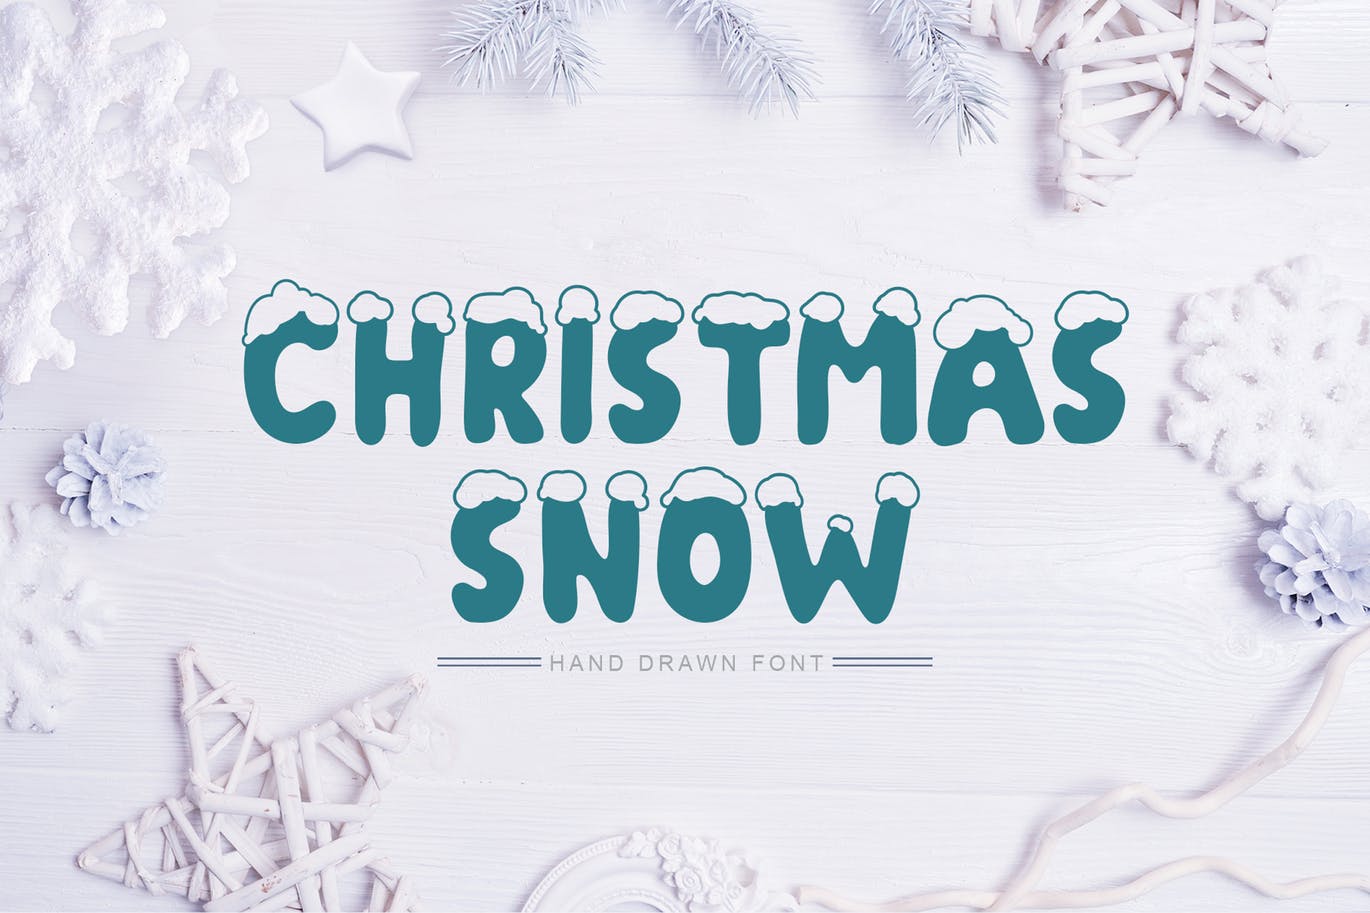 积雪盖顶圣诞节主题英文手写字体 Christmas Snow Hand Drawn Font插图